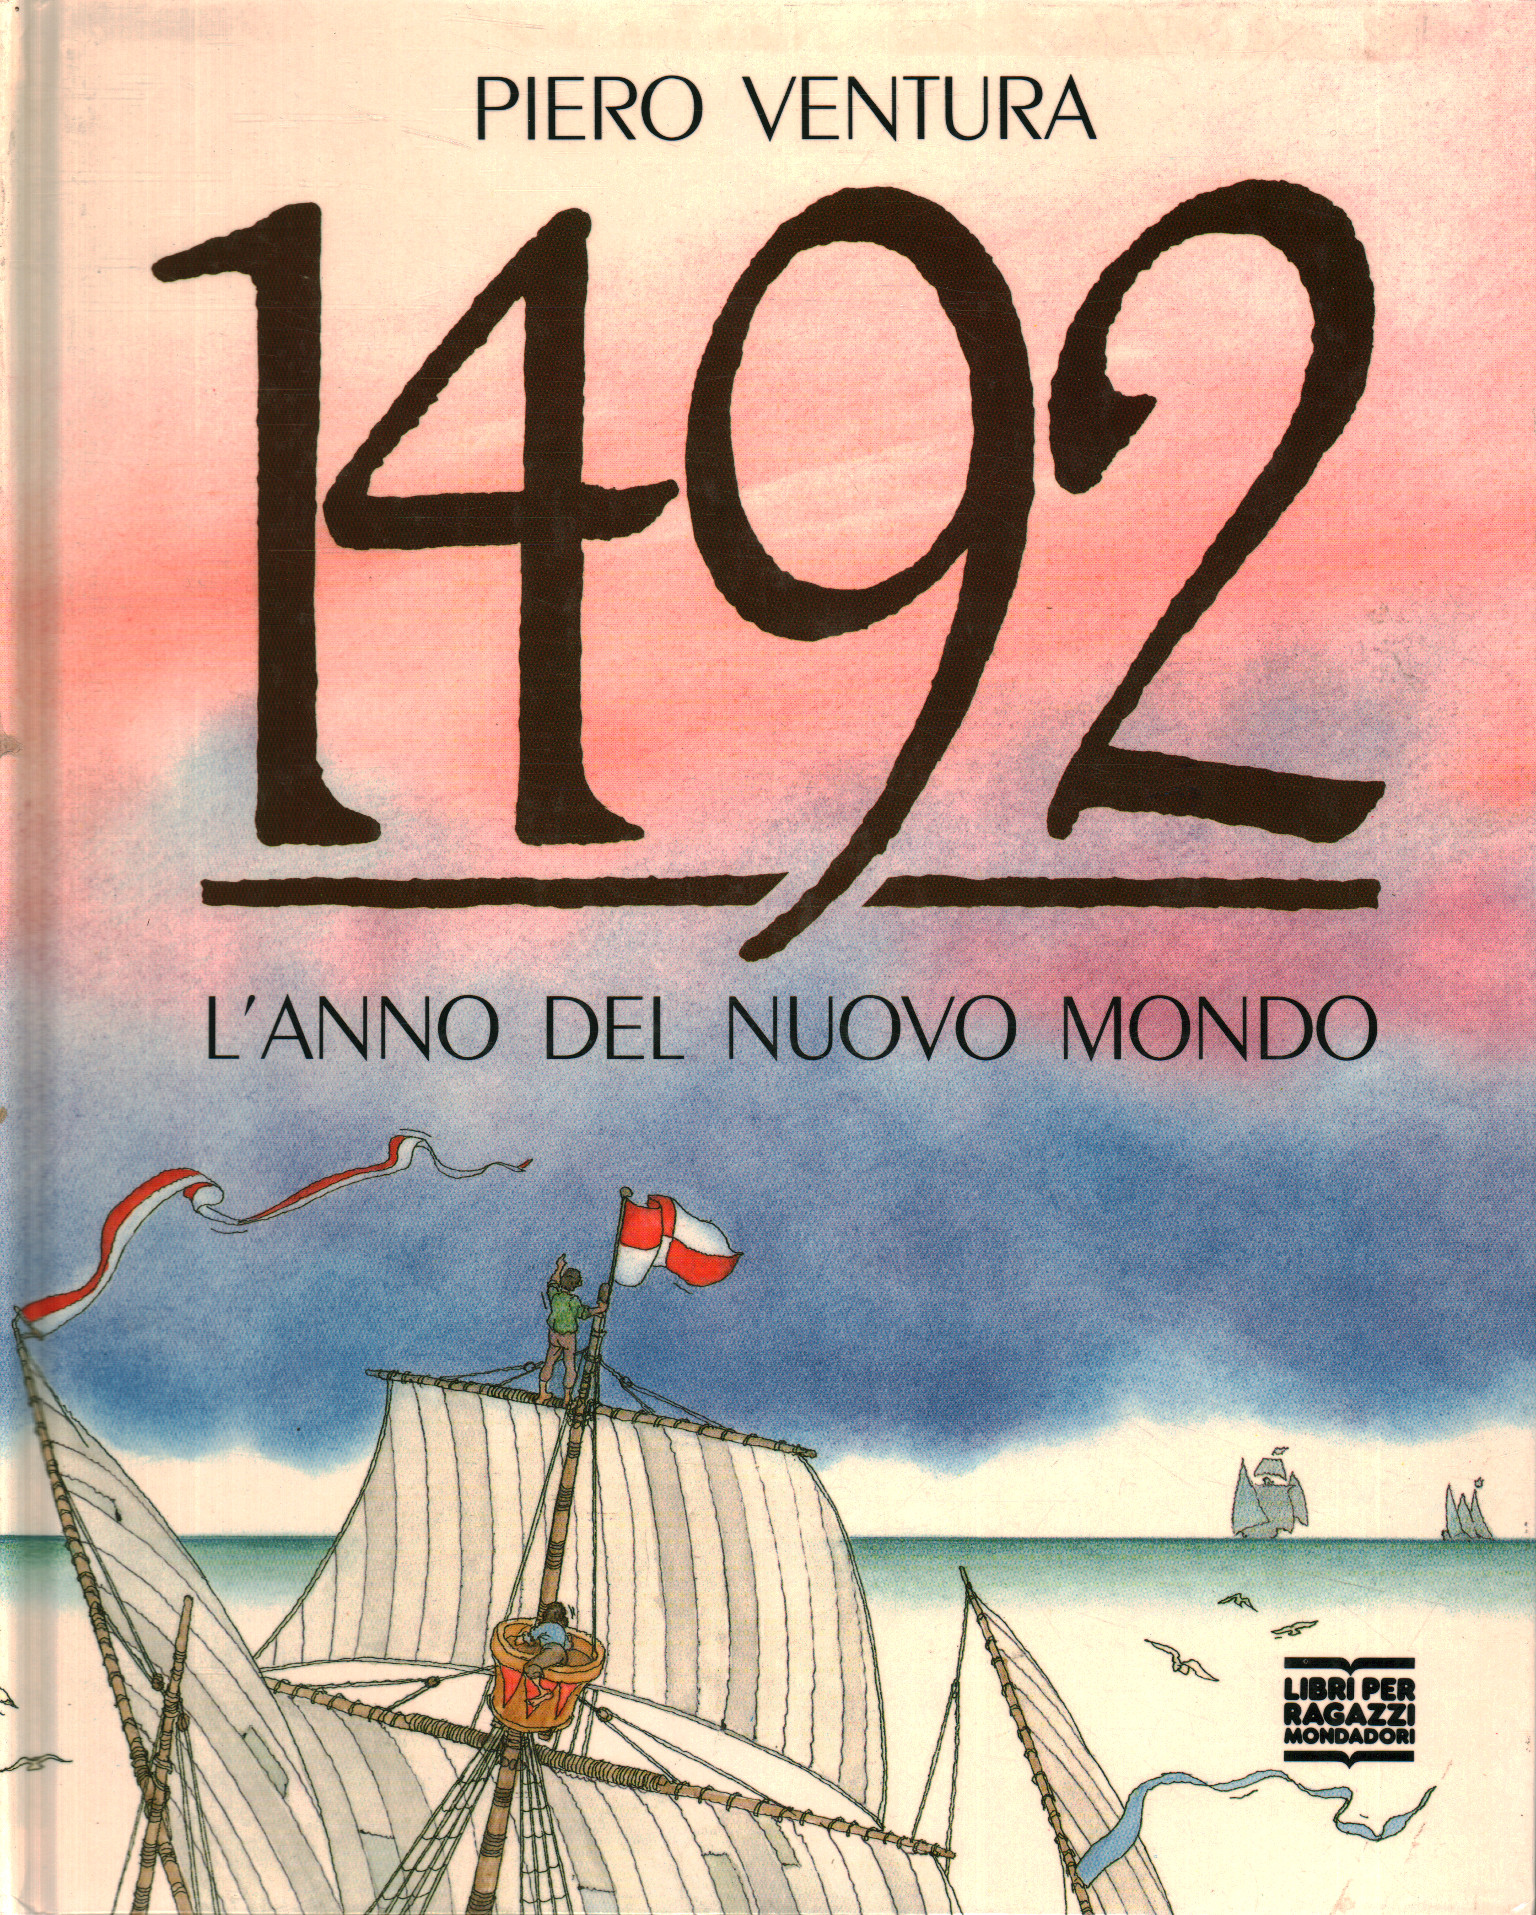 Libros - Infantil / libros infantiles - Ilustrados, 1492. El año del nuevo mundo.